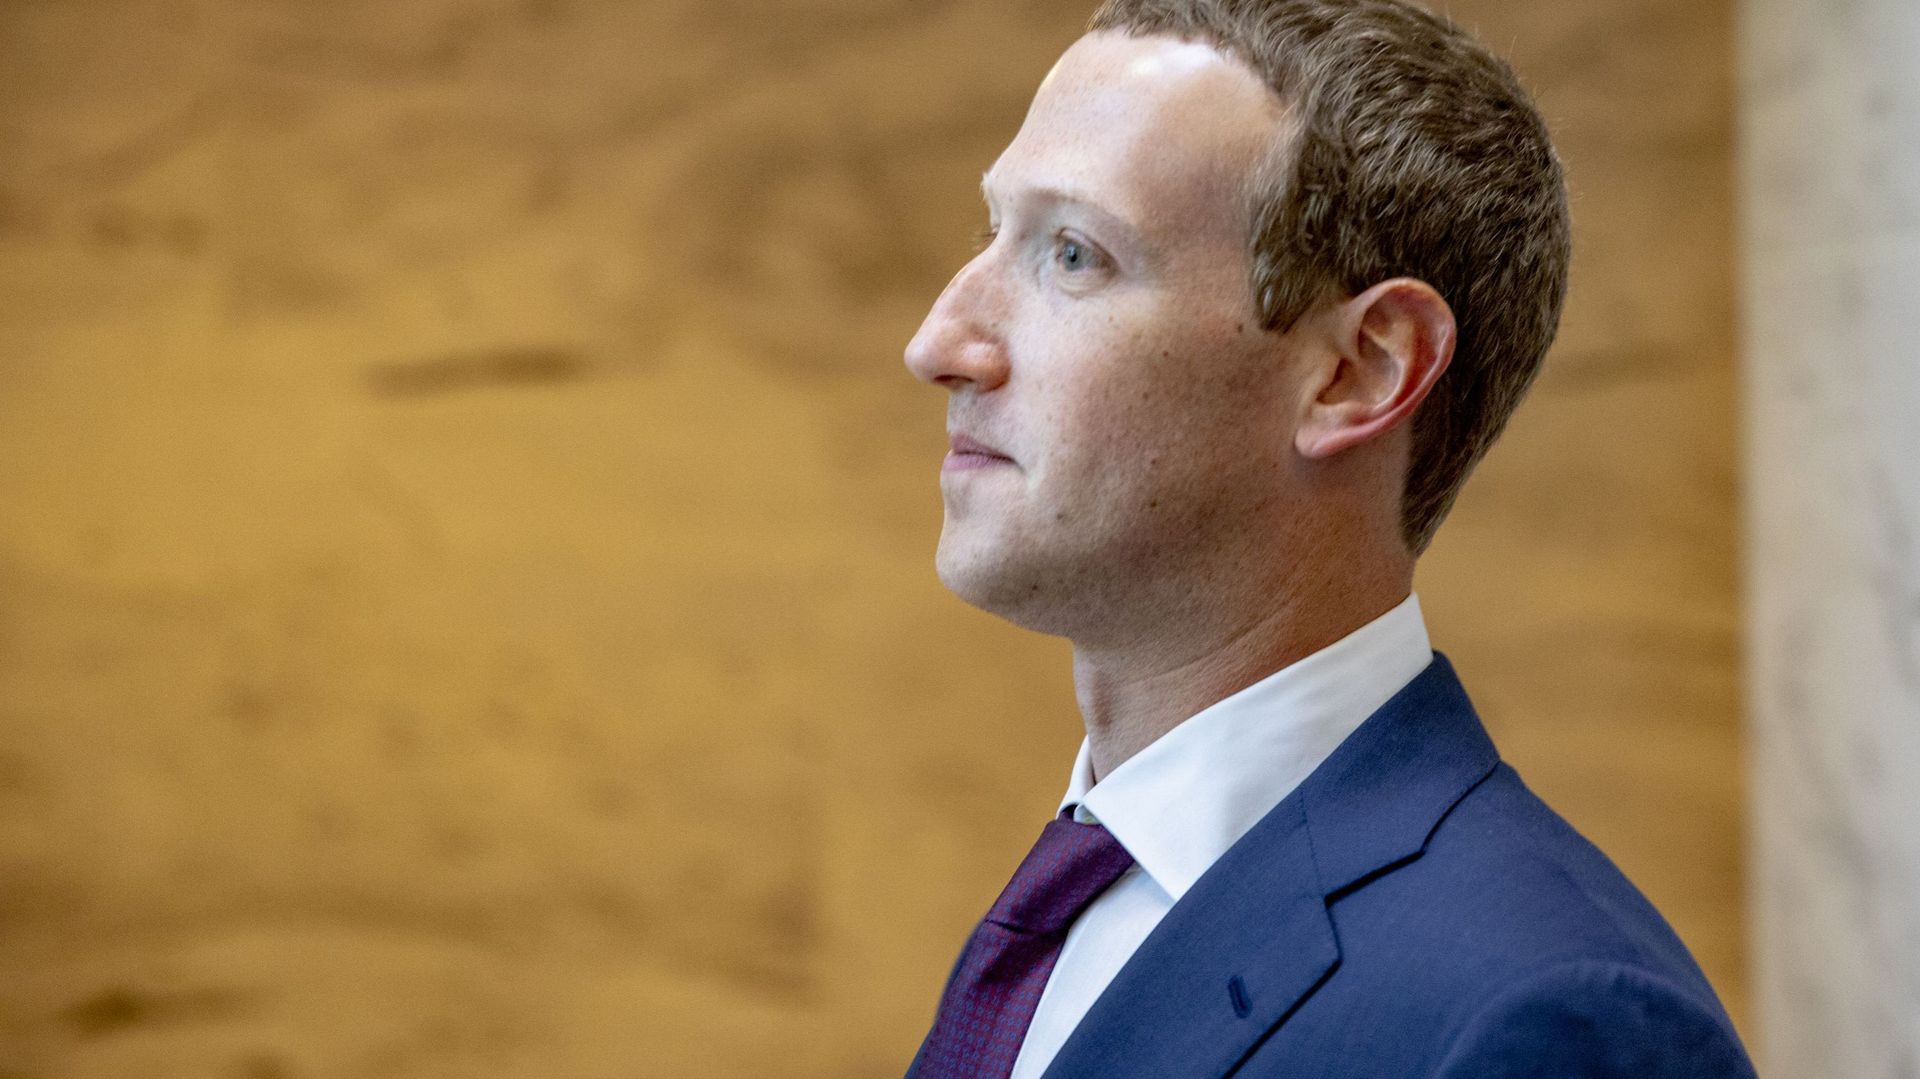 Contenus haineux: Facebook perd devant la justice de l'UE 